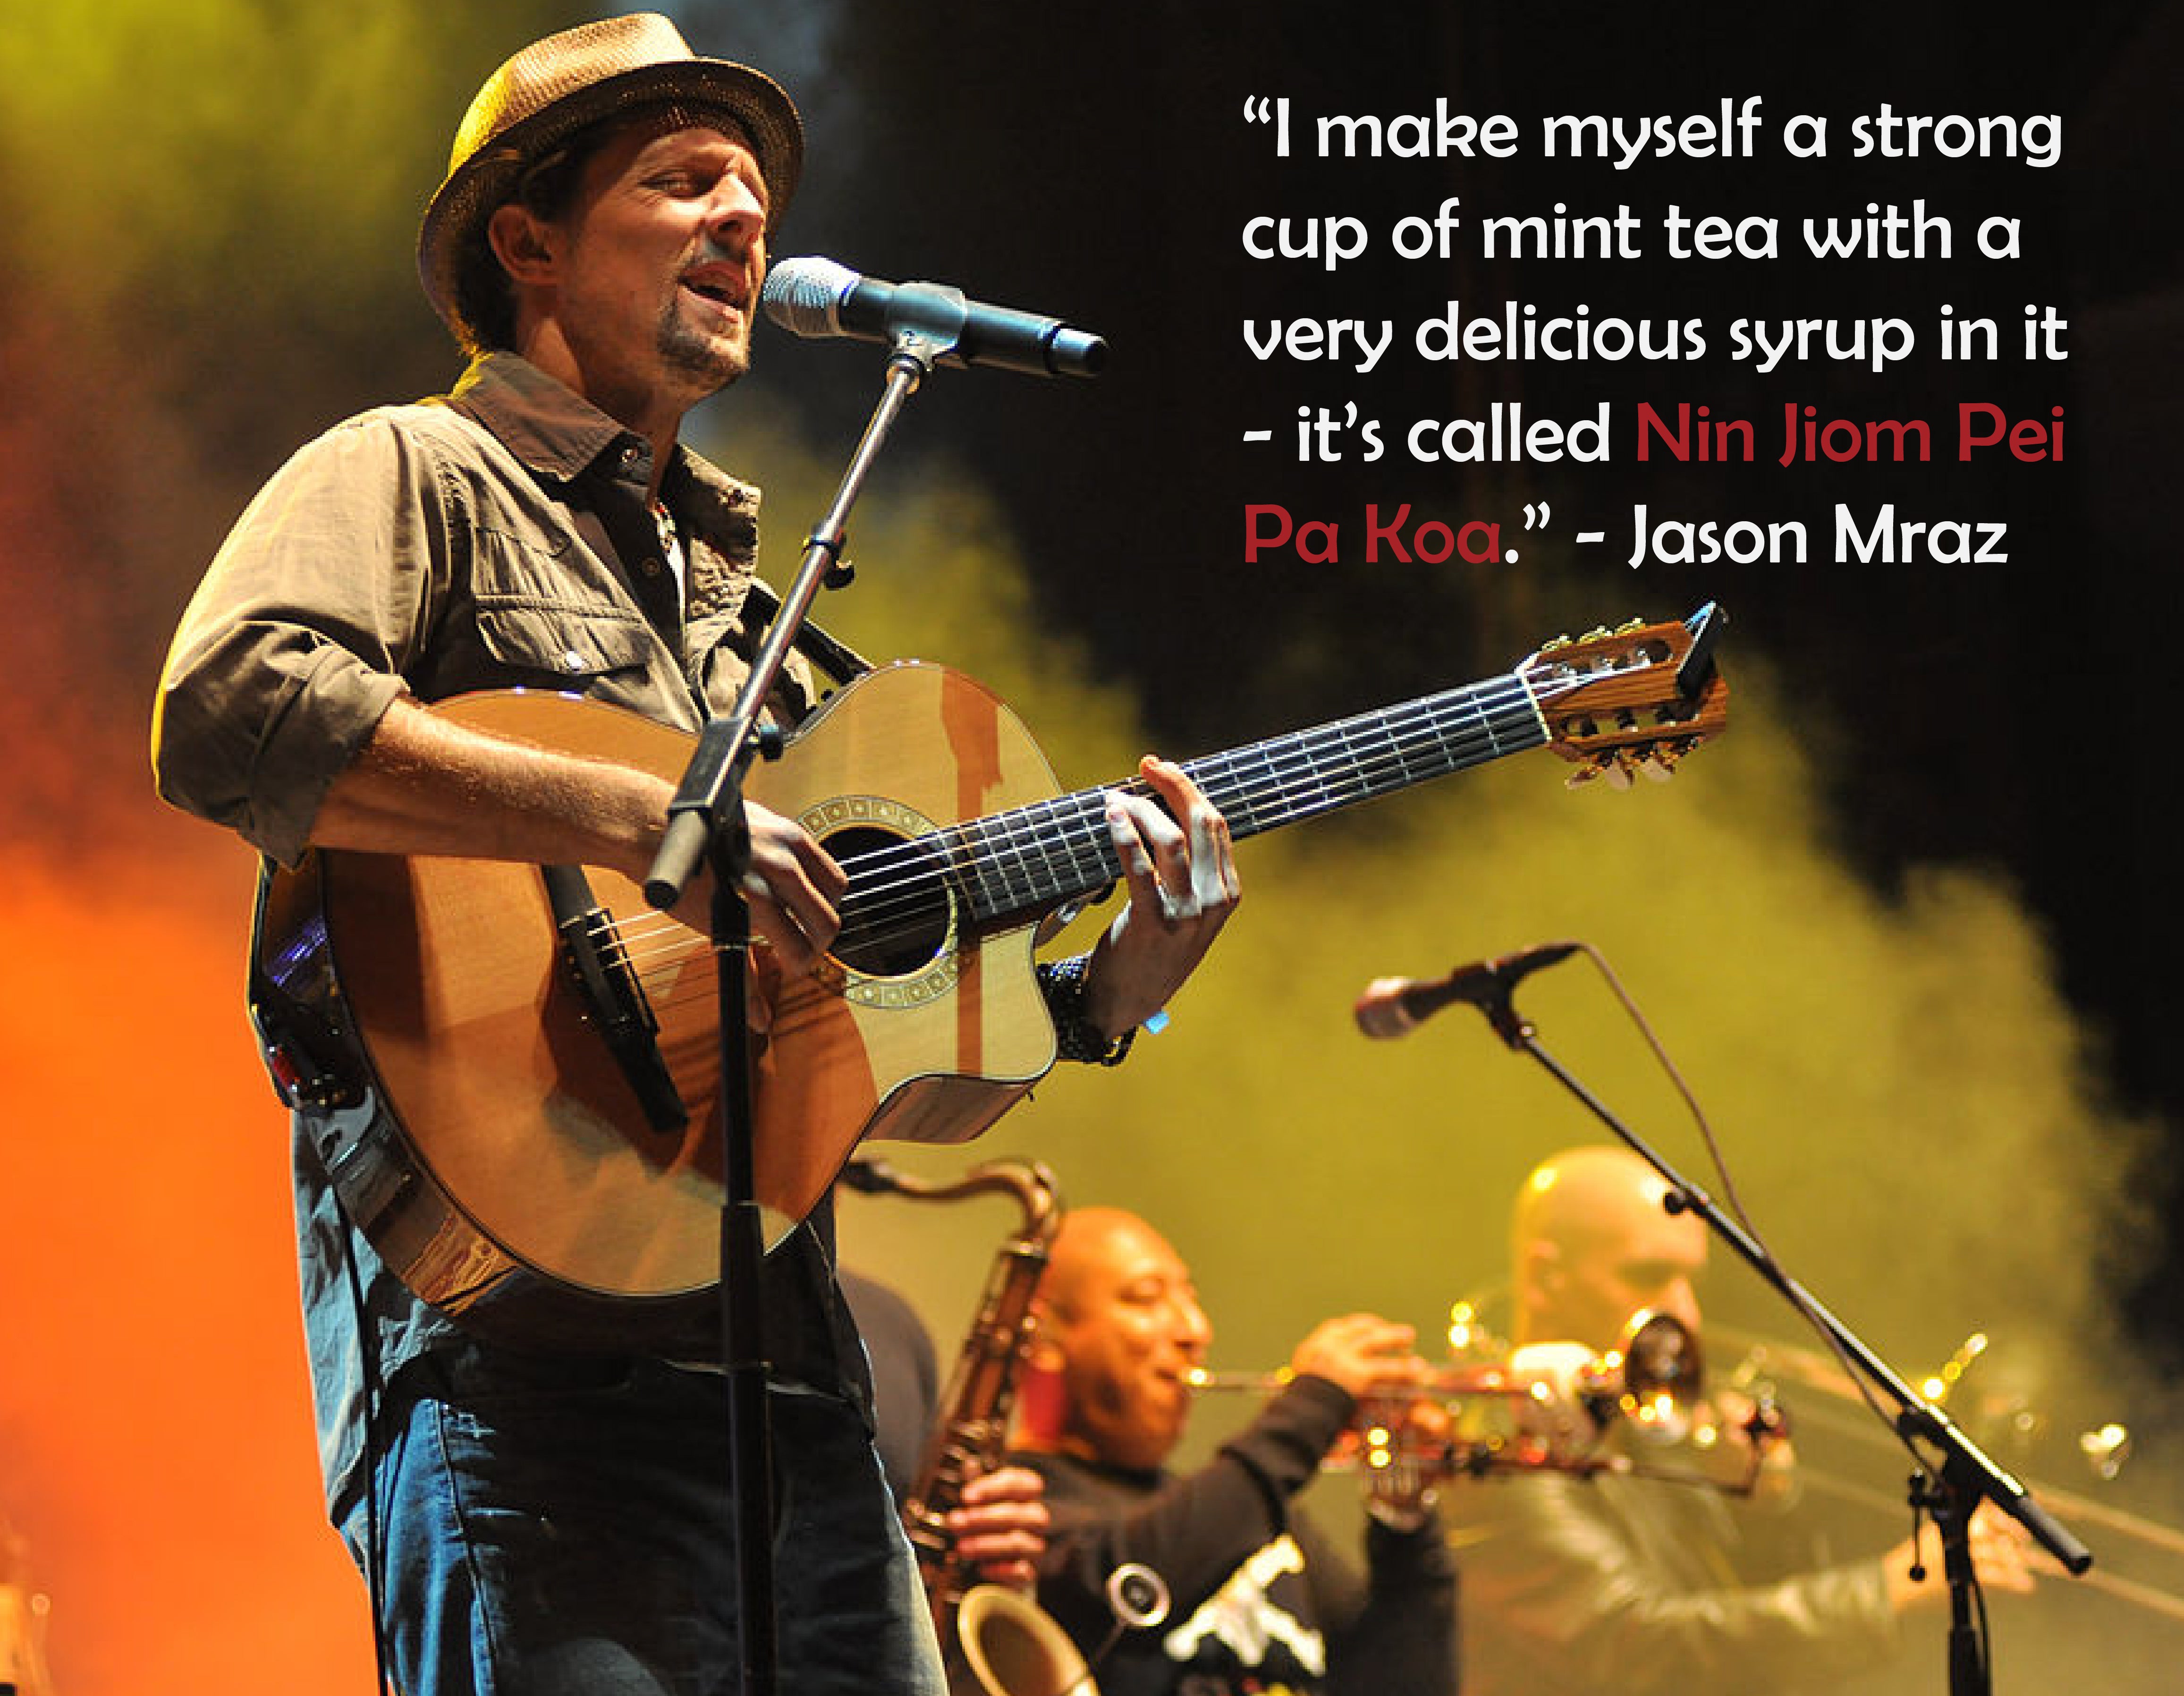 El ganador del Grammy Jason Mraz se calienta con Nin Jiom Pei Pa Koa